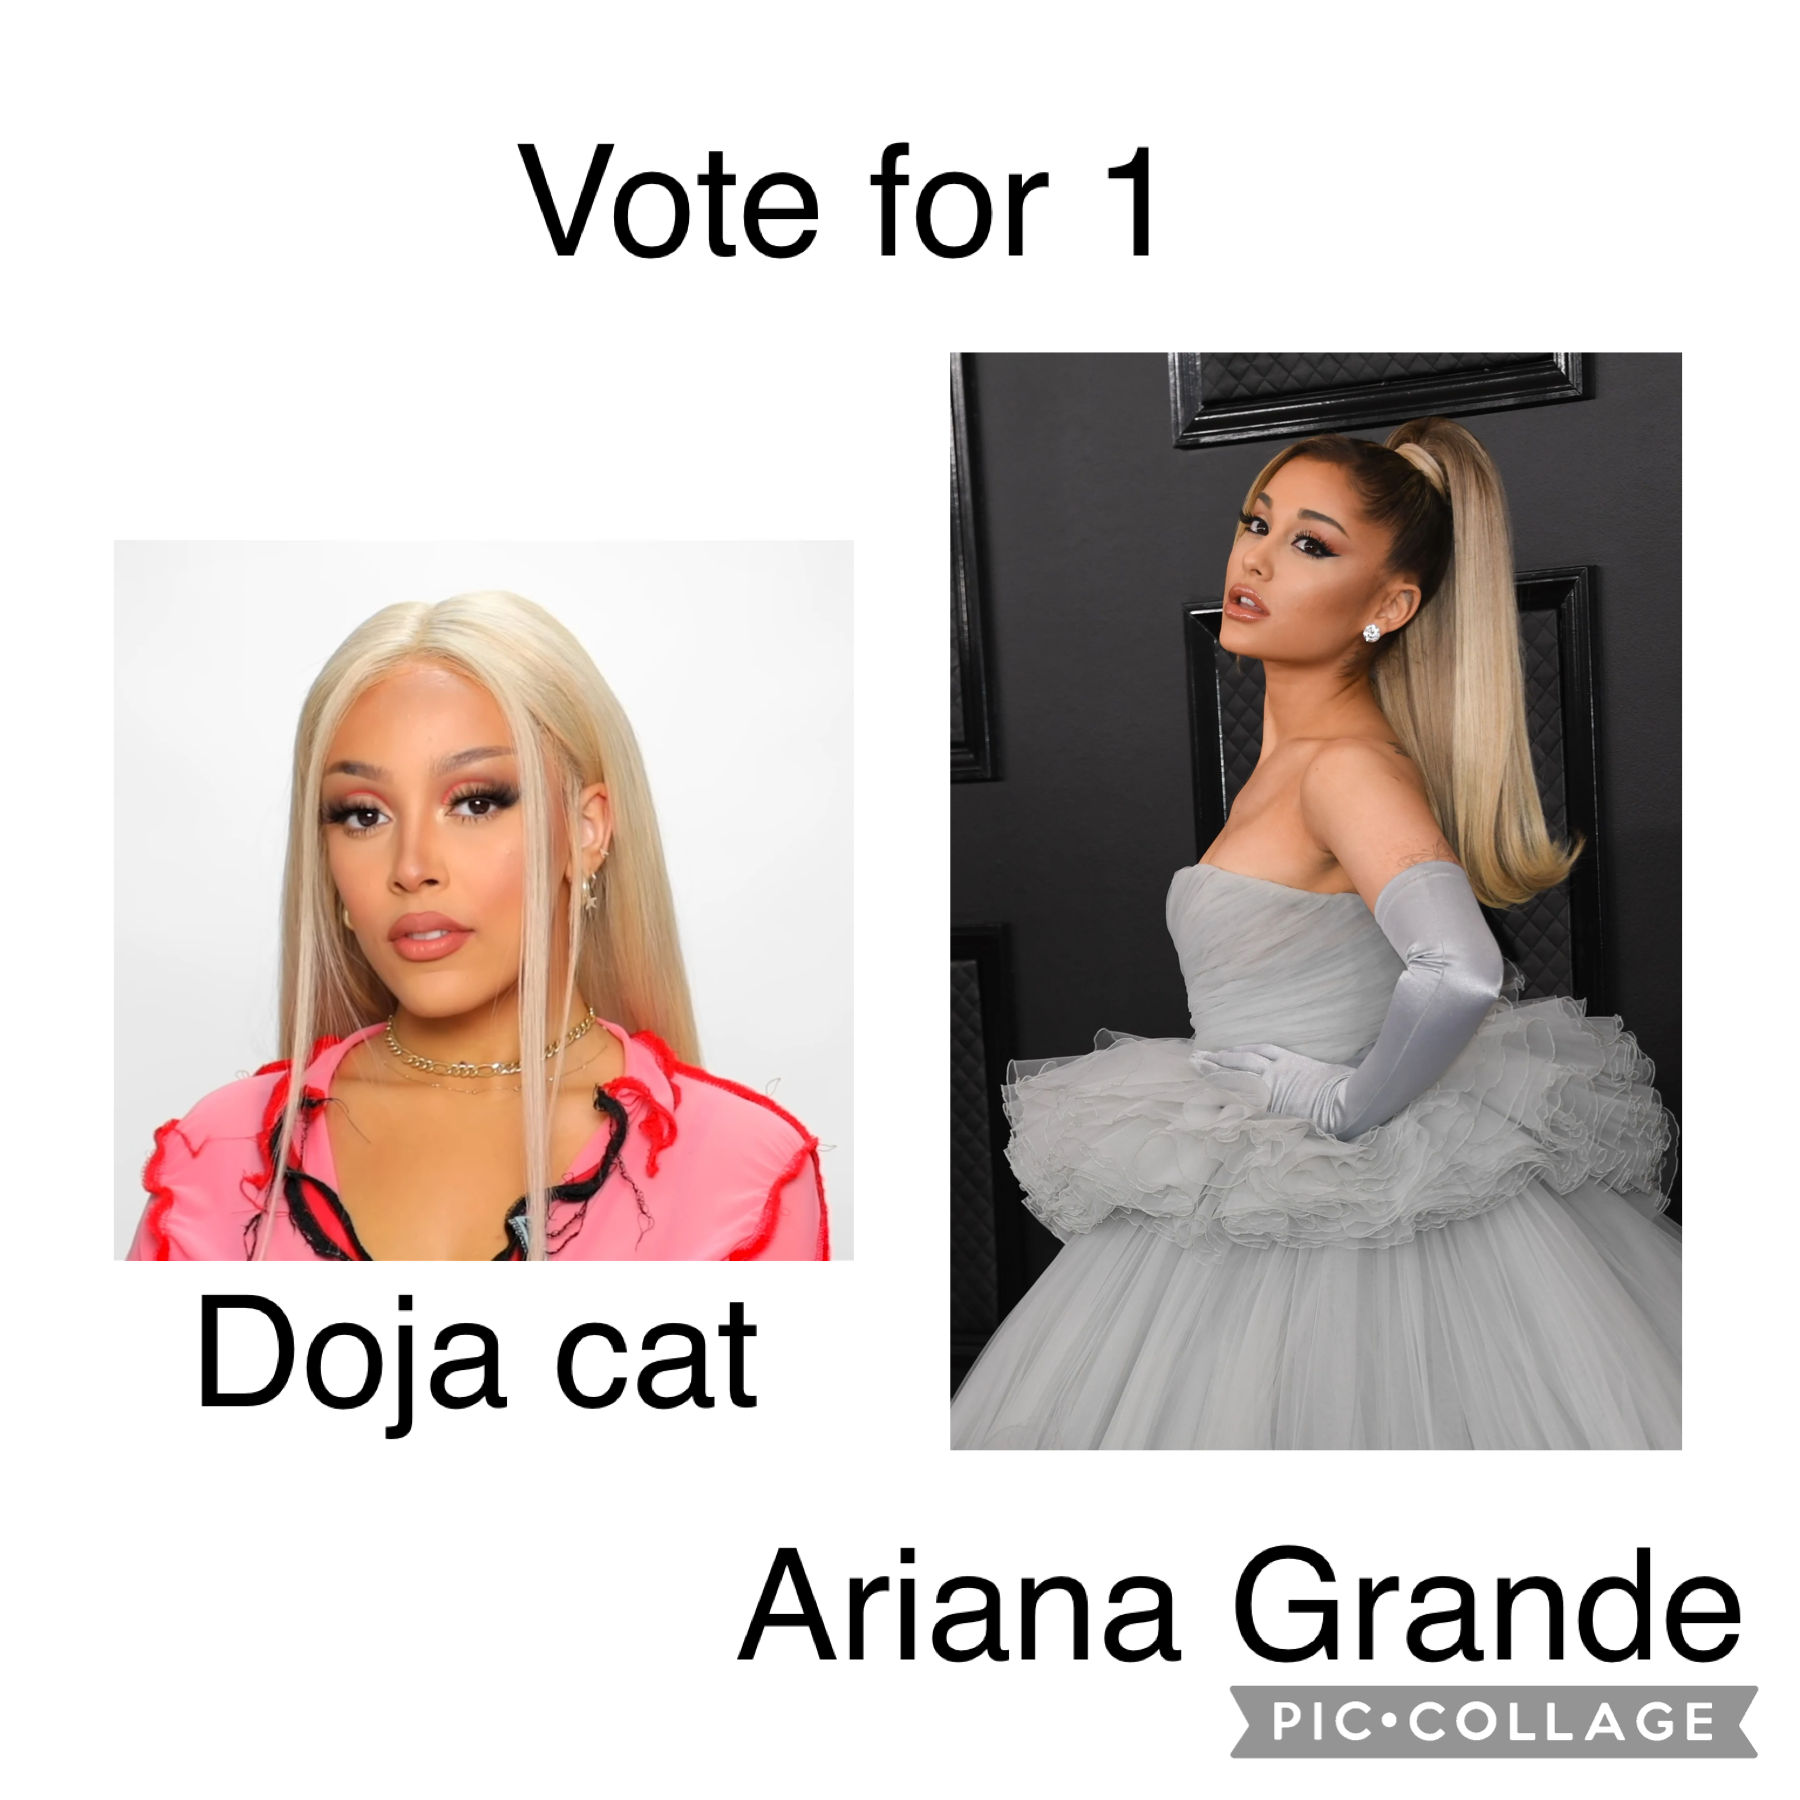 Ariana or doja cat?